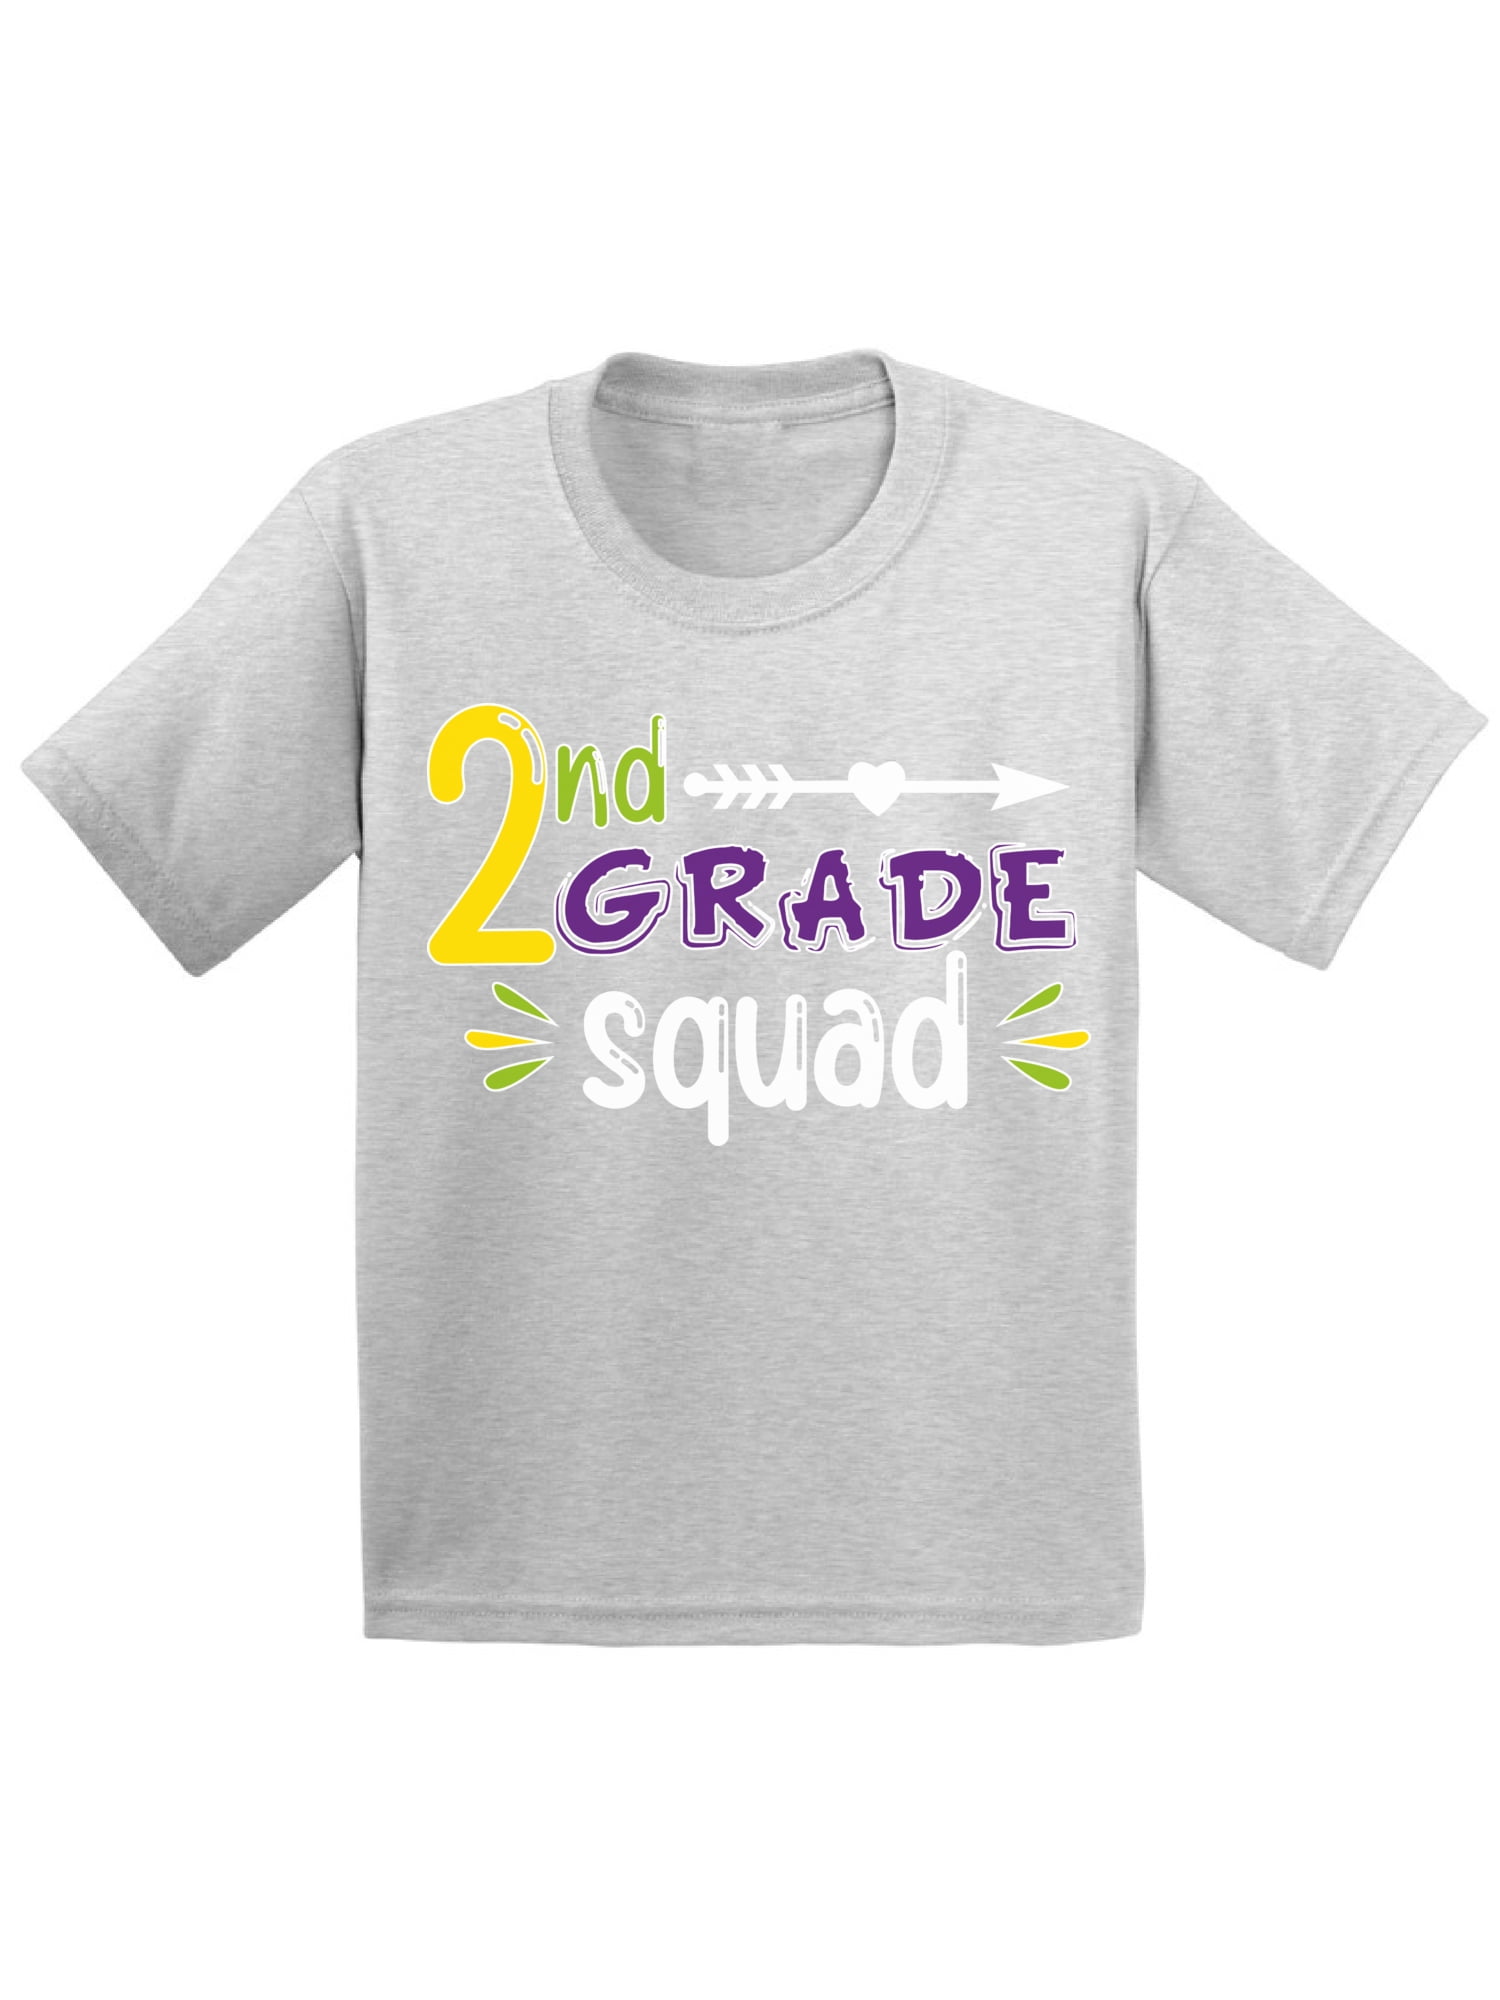 2nd Grade Shirt Back To School Shirt Second Grade Team Shirt First Day Of School Shirt Second Grade Teacher Shirt Second Grade Shirt